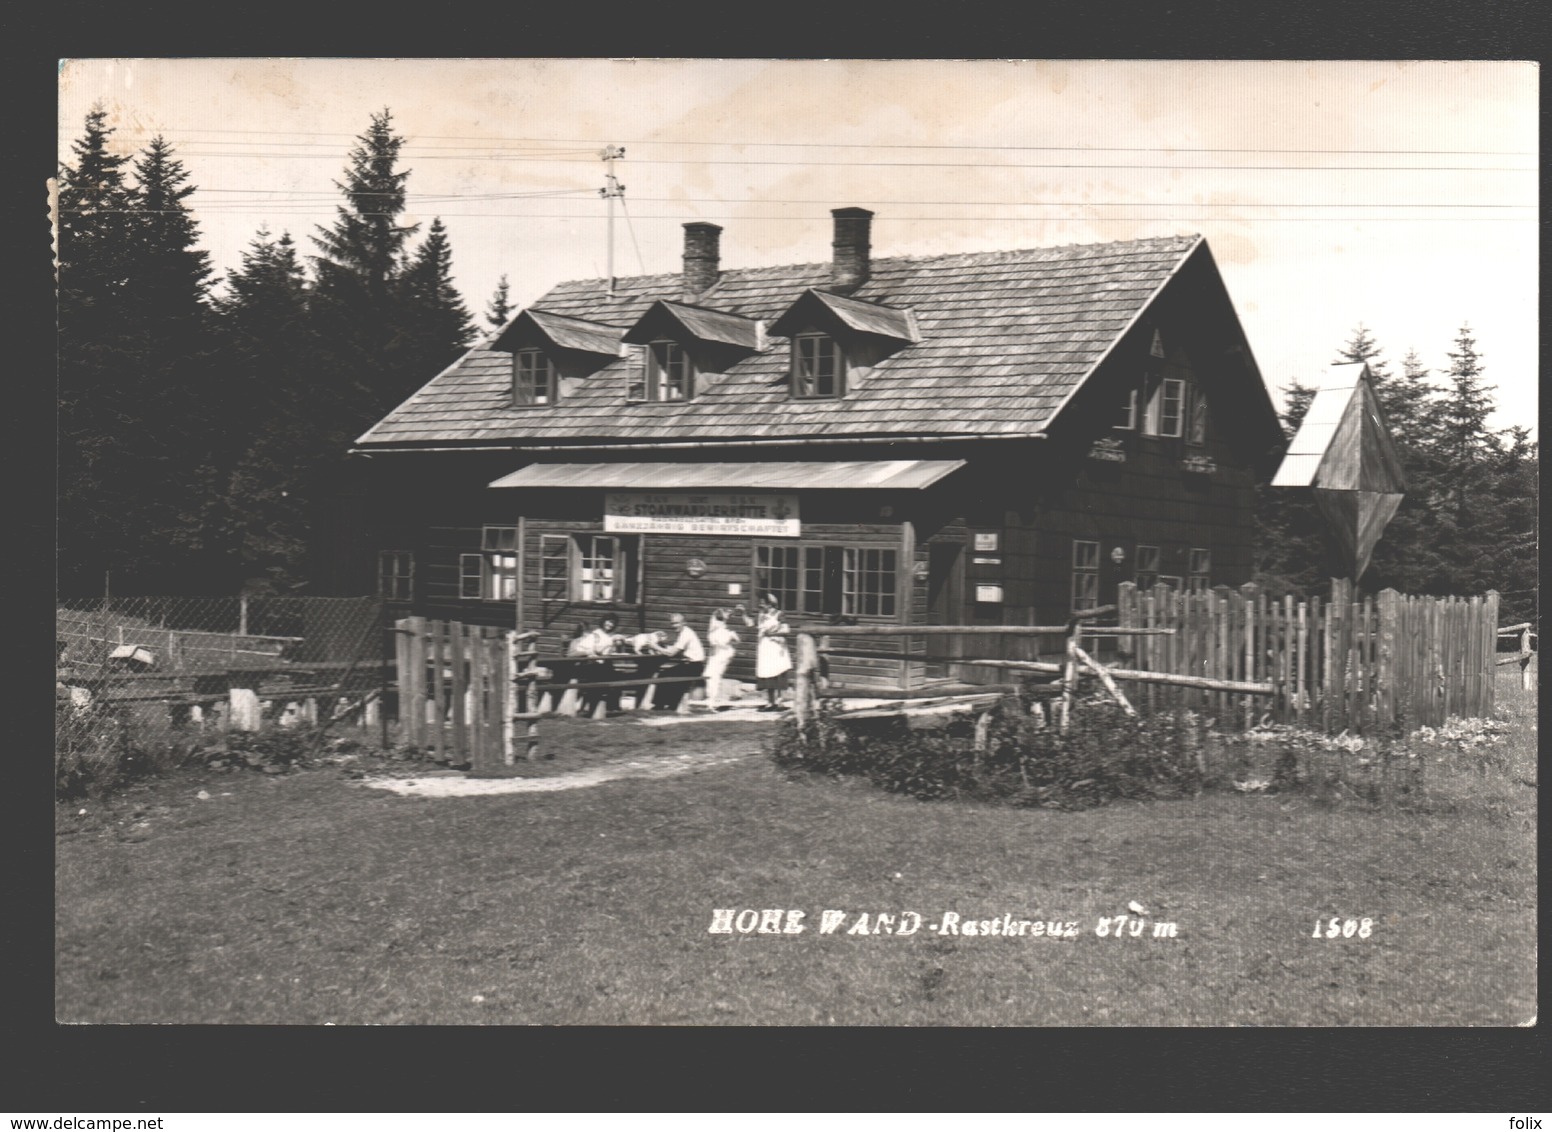 Grünbach An Der Schneeberg - Hohe Wand - Rastkreuz - Stoanwandlerhütte - Schlag Hütte - 1958 - Foto Egelseer - Schneeberggebiet